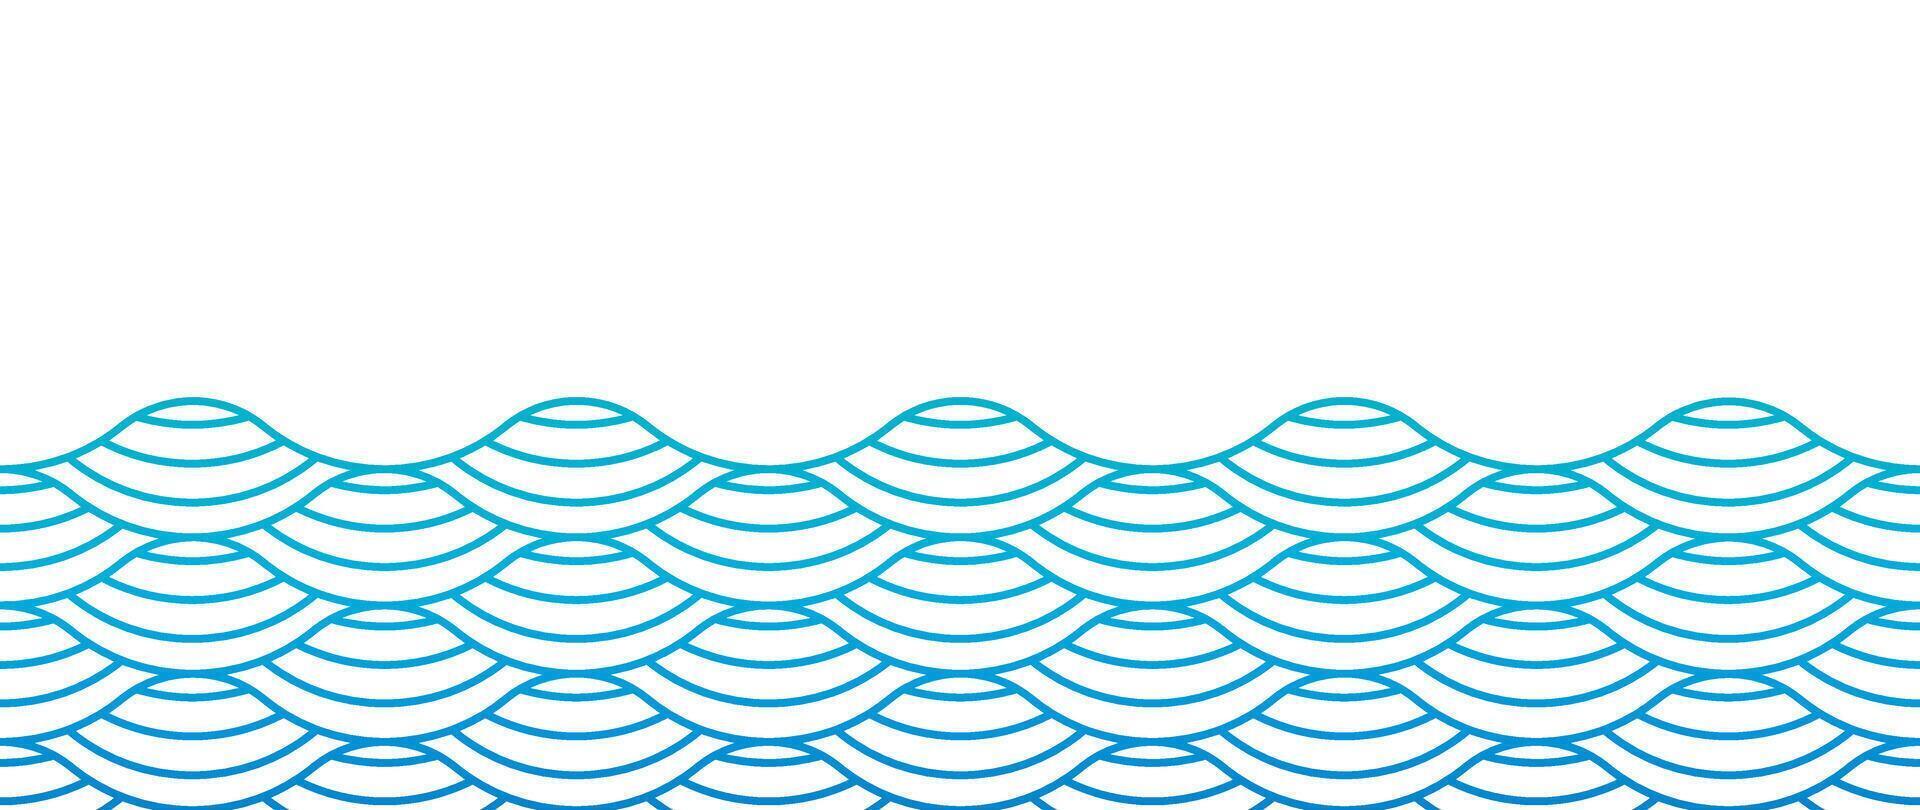 japanisch Blau Welle Hintergrund Vektor. Hintergrund Design mit Blau und Weiß nahtlos Ozean Welle Muster Hintergrund. modern Luxus orientalisch Illustration zum Abdeckung, Banner, Webseite, Dekor, Grenze. vektor